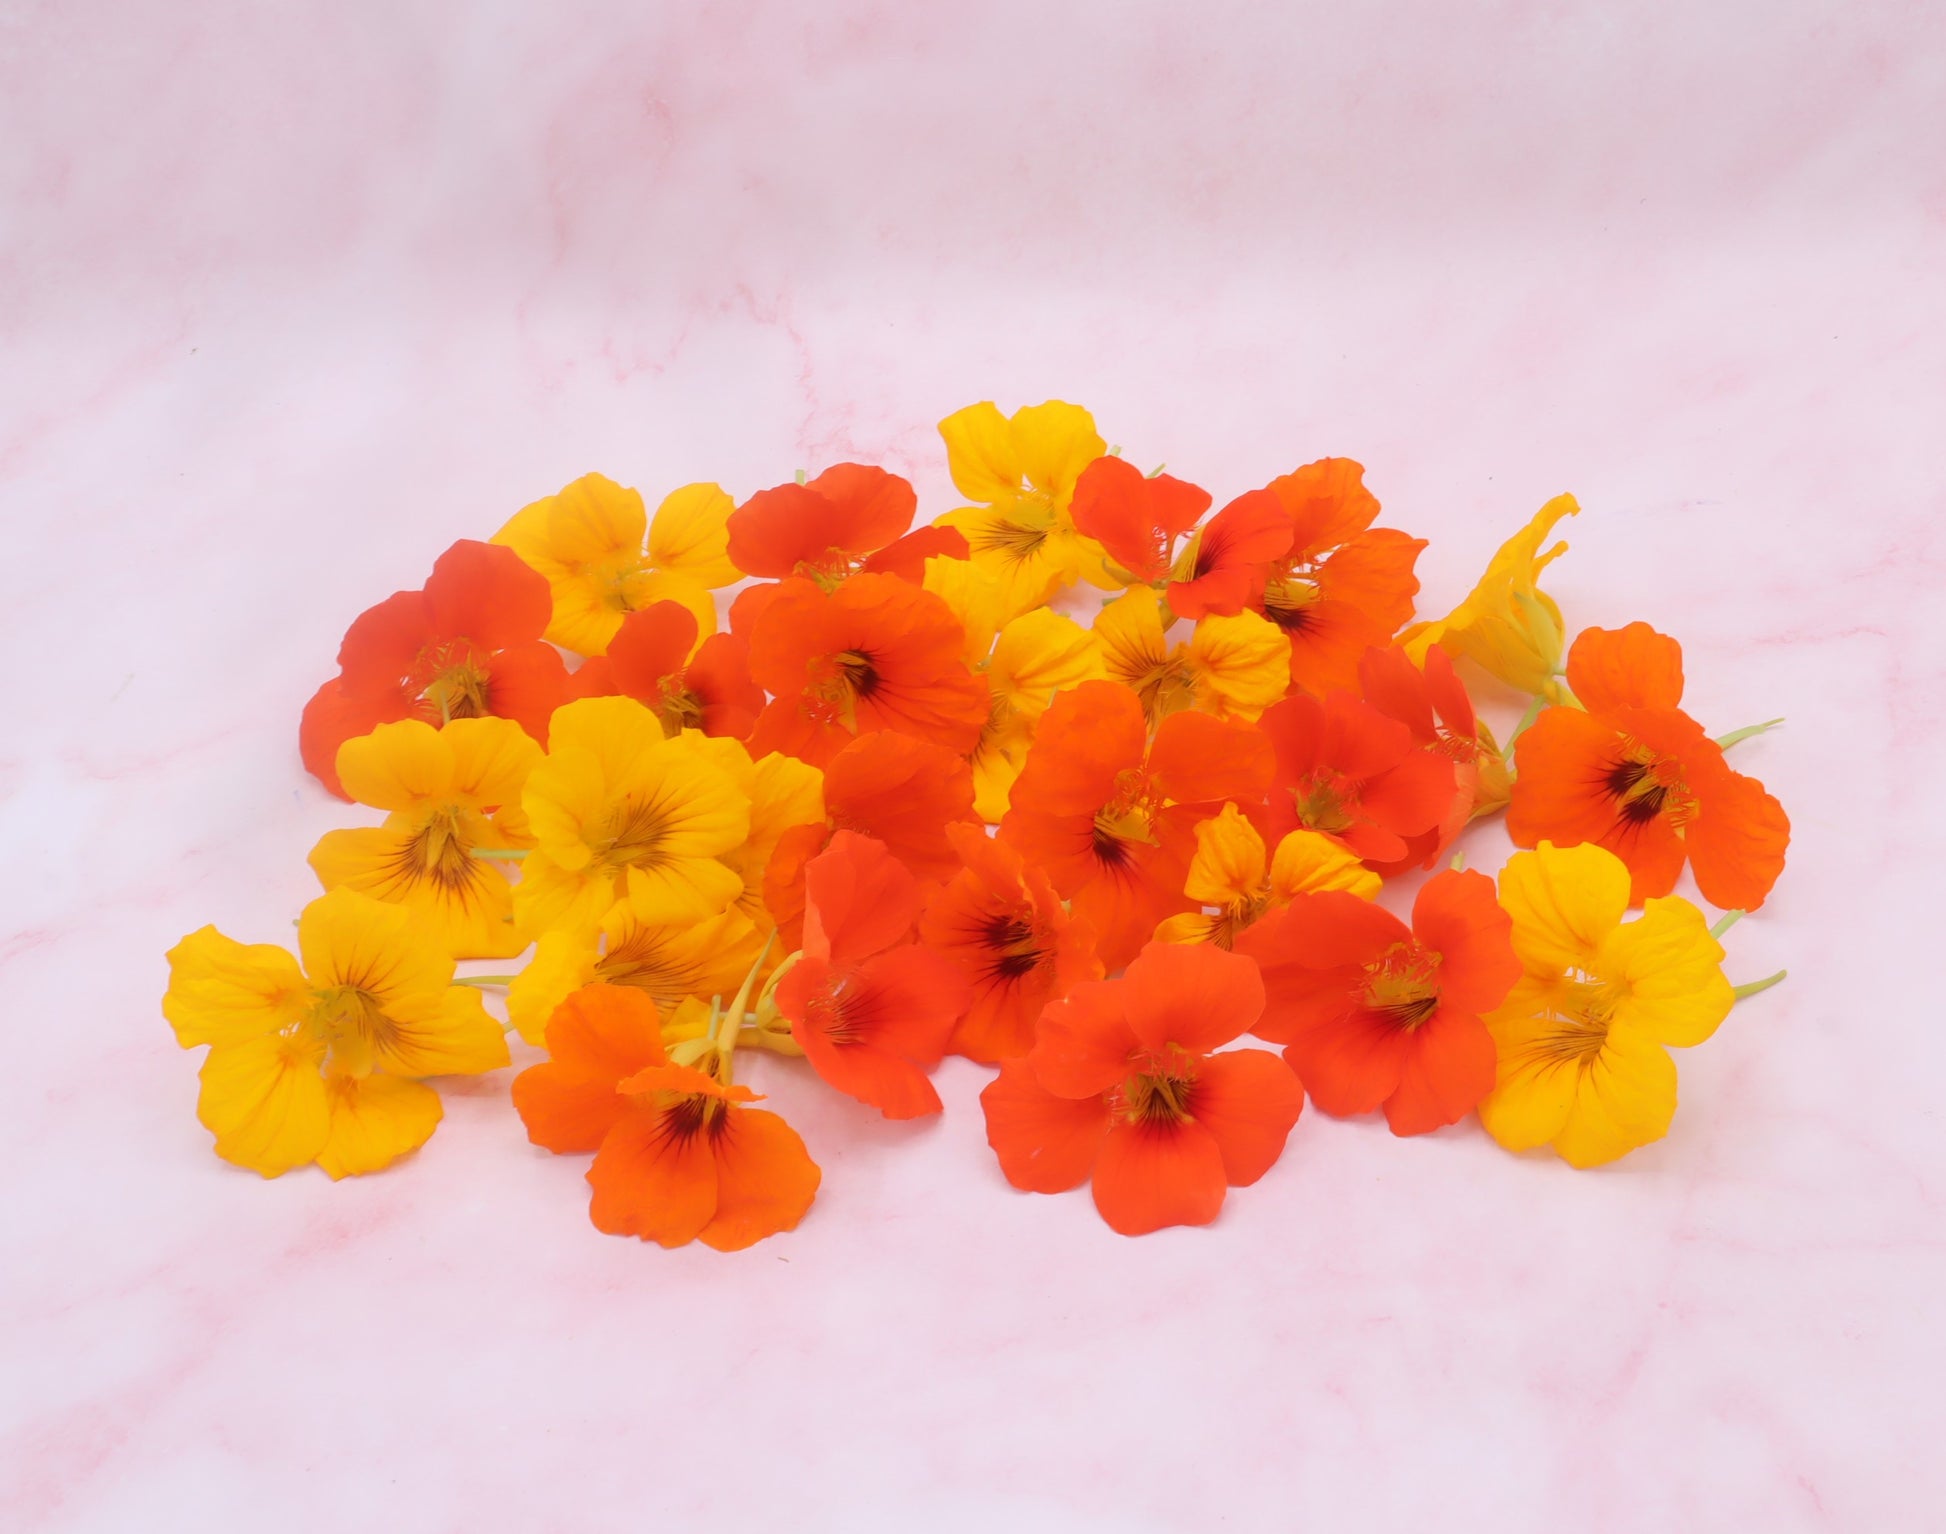 Eetbare Oost-indische kers bloemen, eetbare bloemen, oranje eetbare bloemen